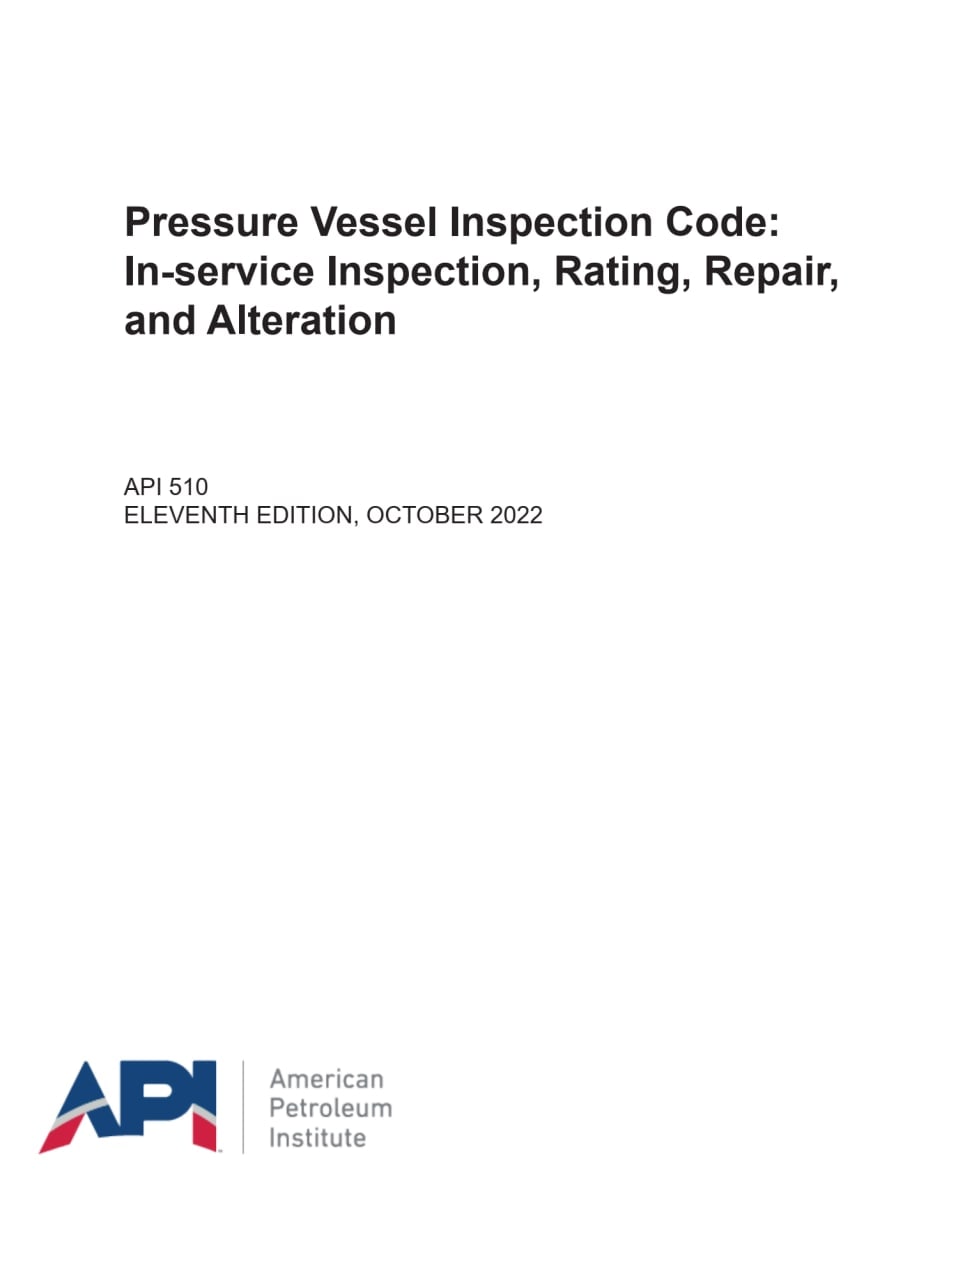 استاندارد سیستم بازرسی حین بهره برداری ظروف تحت فشار  ویرایش 2022 ♦️API 510   2022♦️  ✅Pressure Vessel Inspection Code: In-service Inspection, Rating, Repair, and Alteration